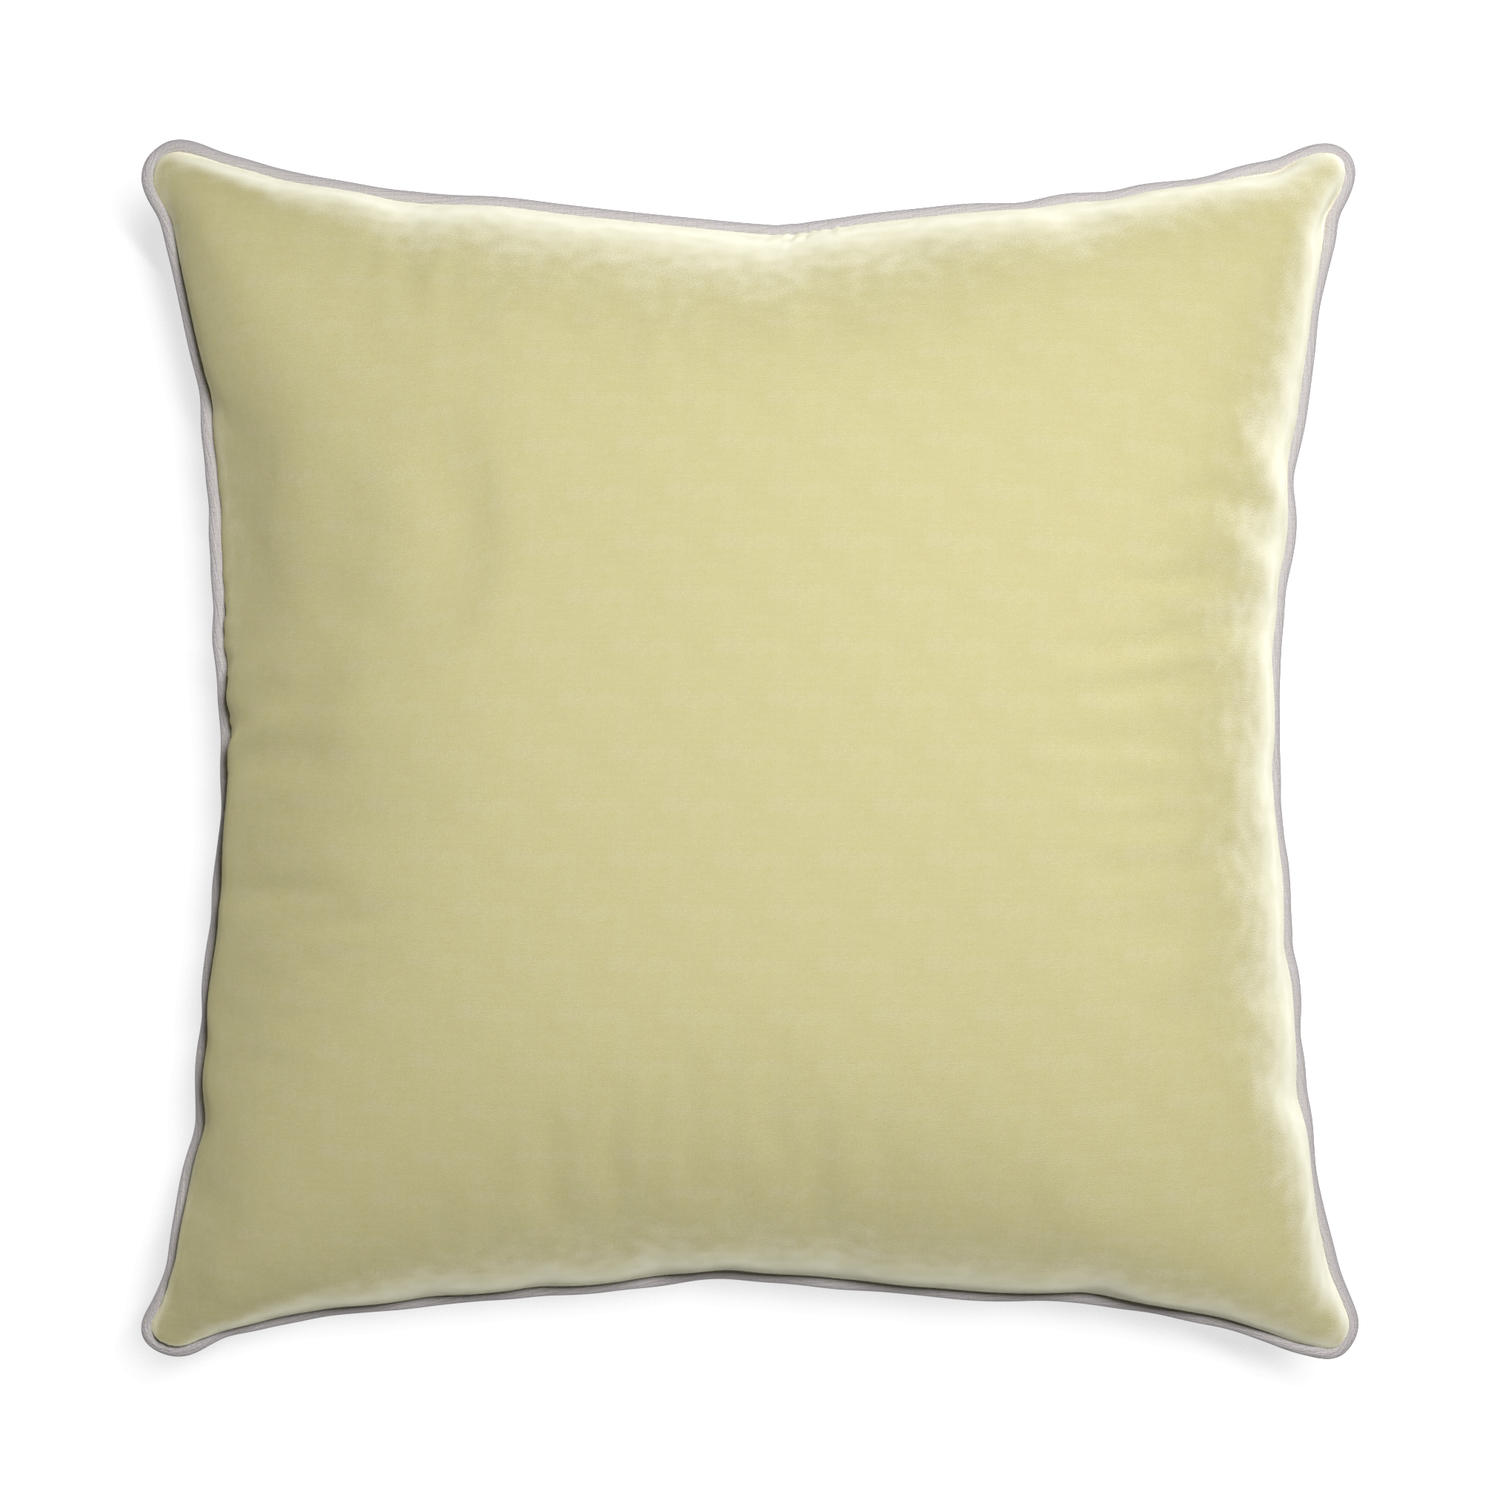 square light green velvet pillow with light gray piping